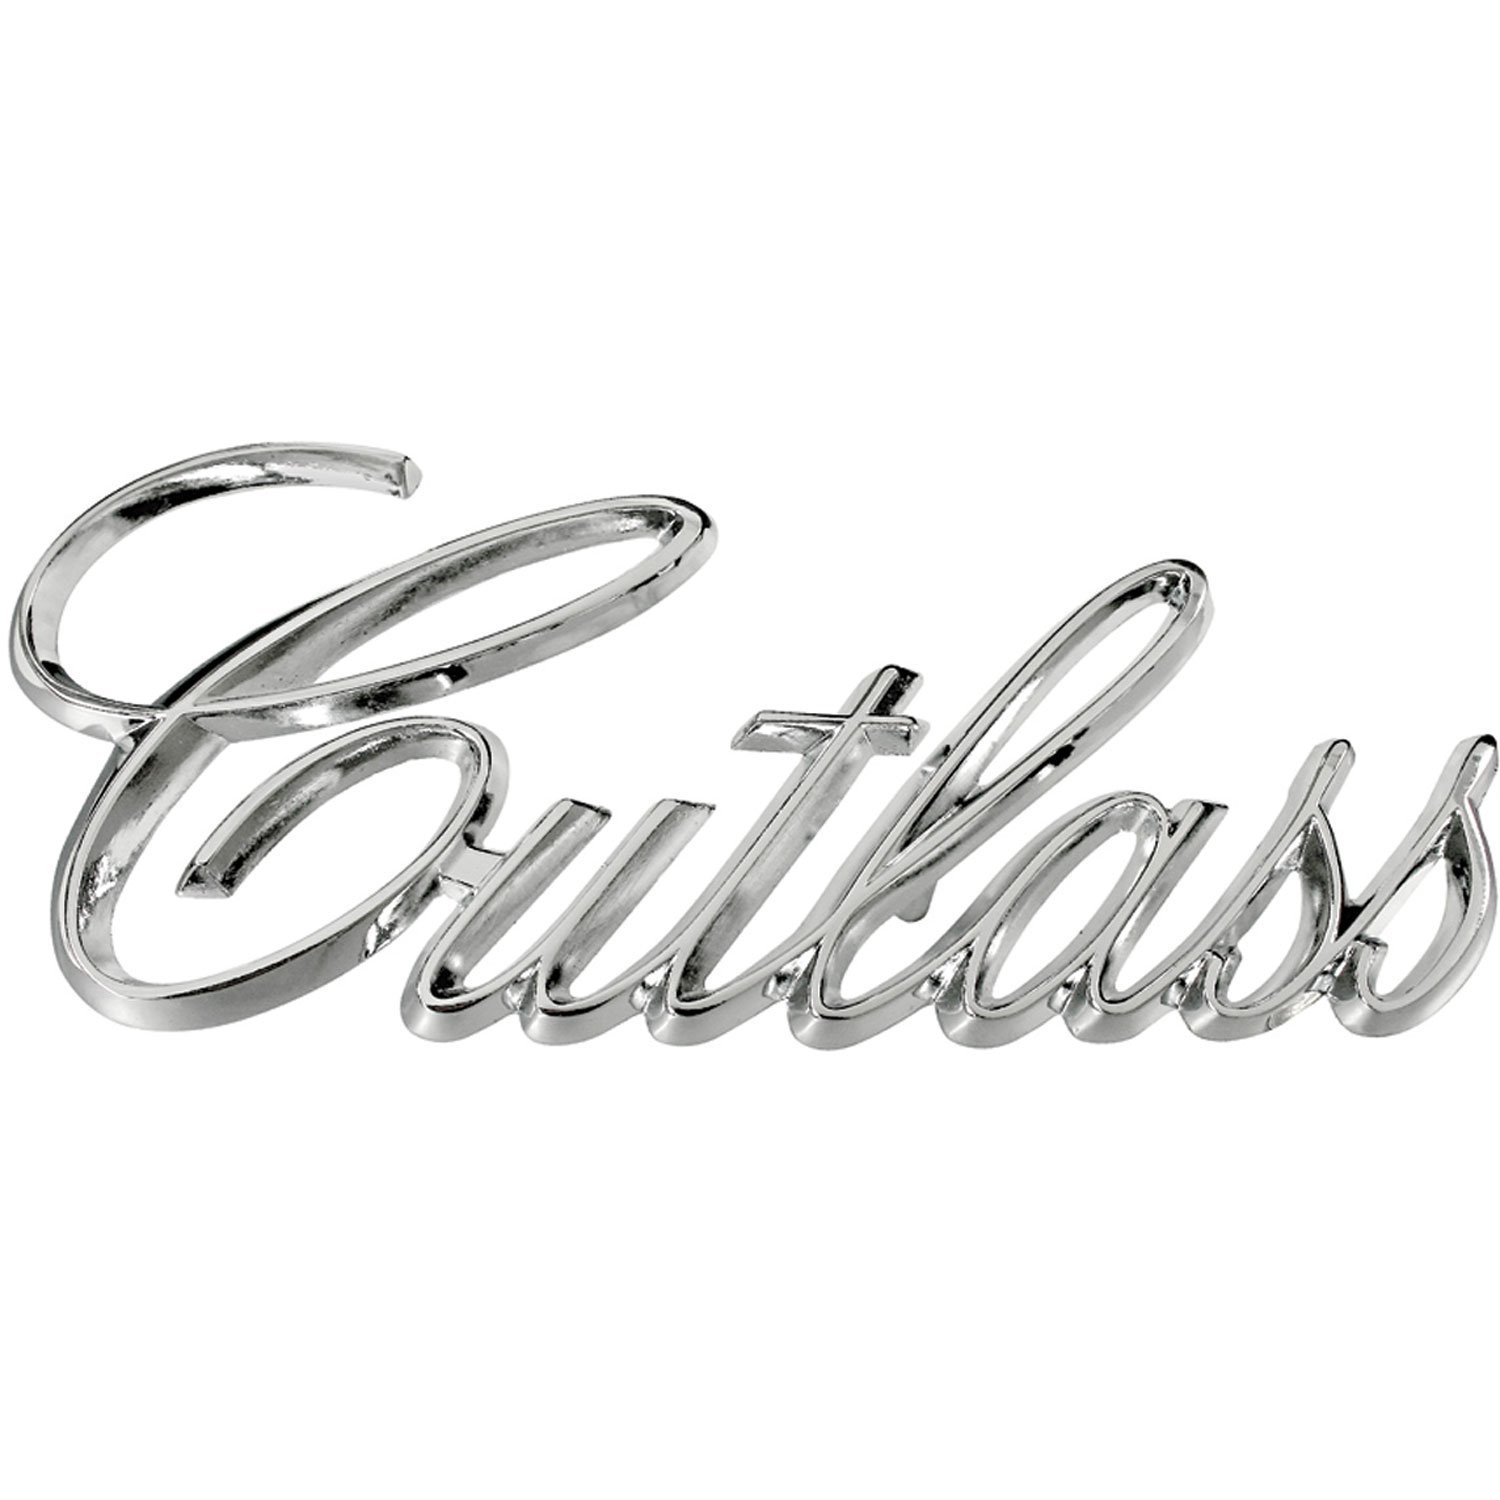 "Cutlass" Fender Emblems 1971-77 Olds Cutlass/442